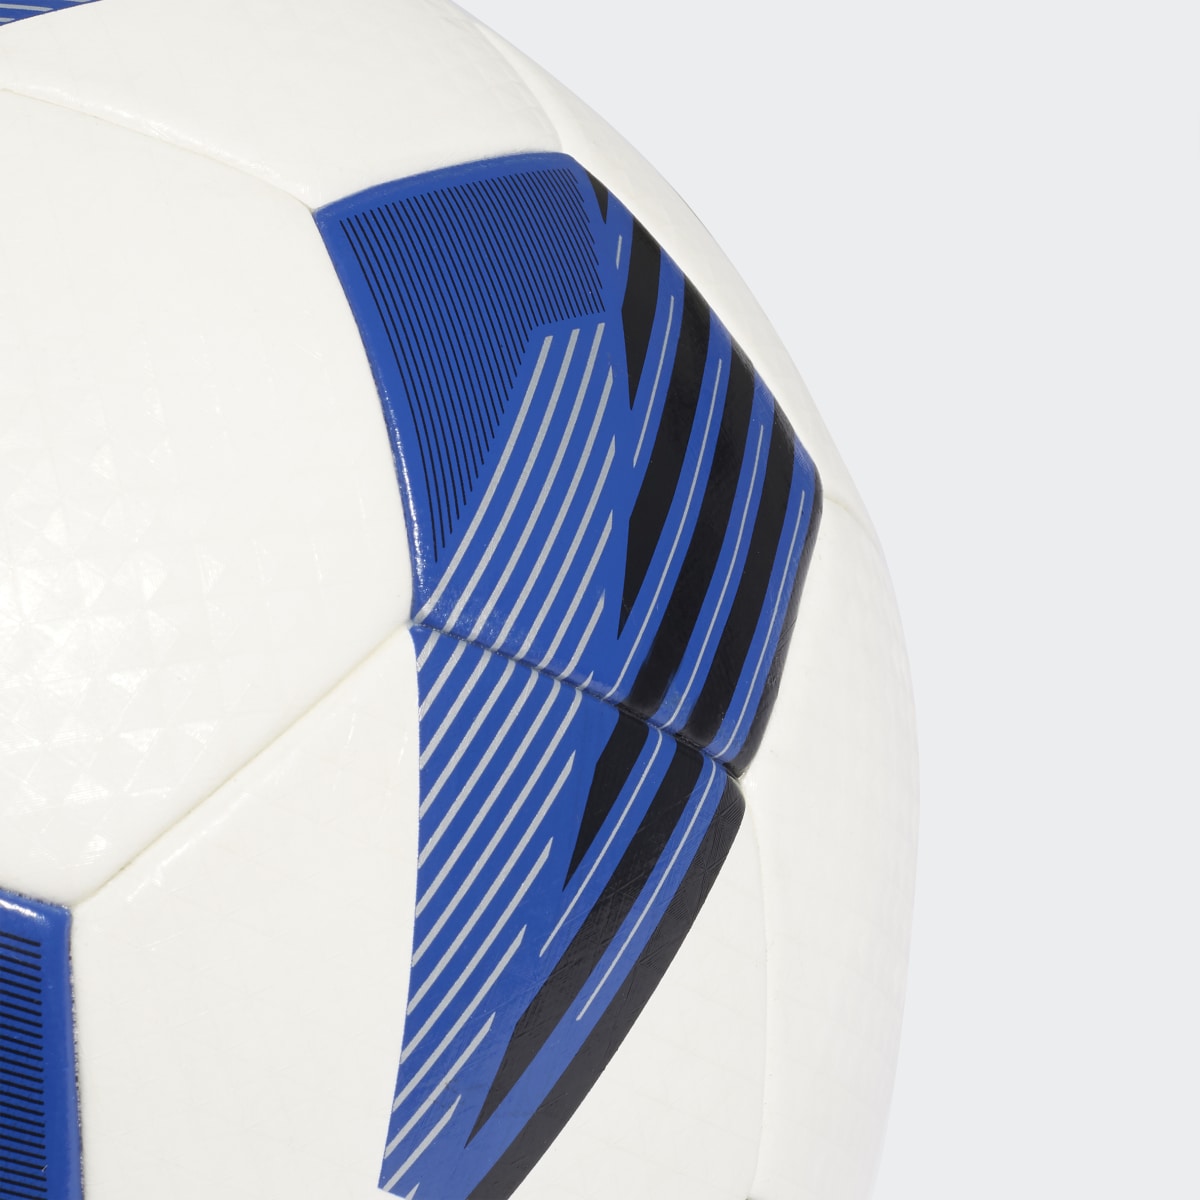 Adidas Ballon Tiro Artificial Turf League. 6